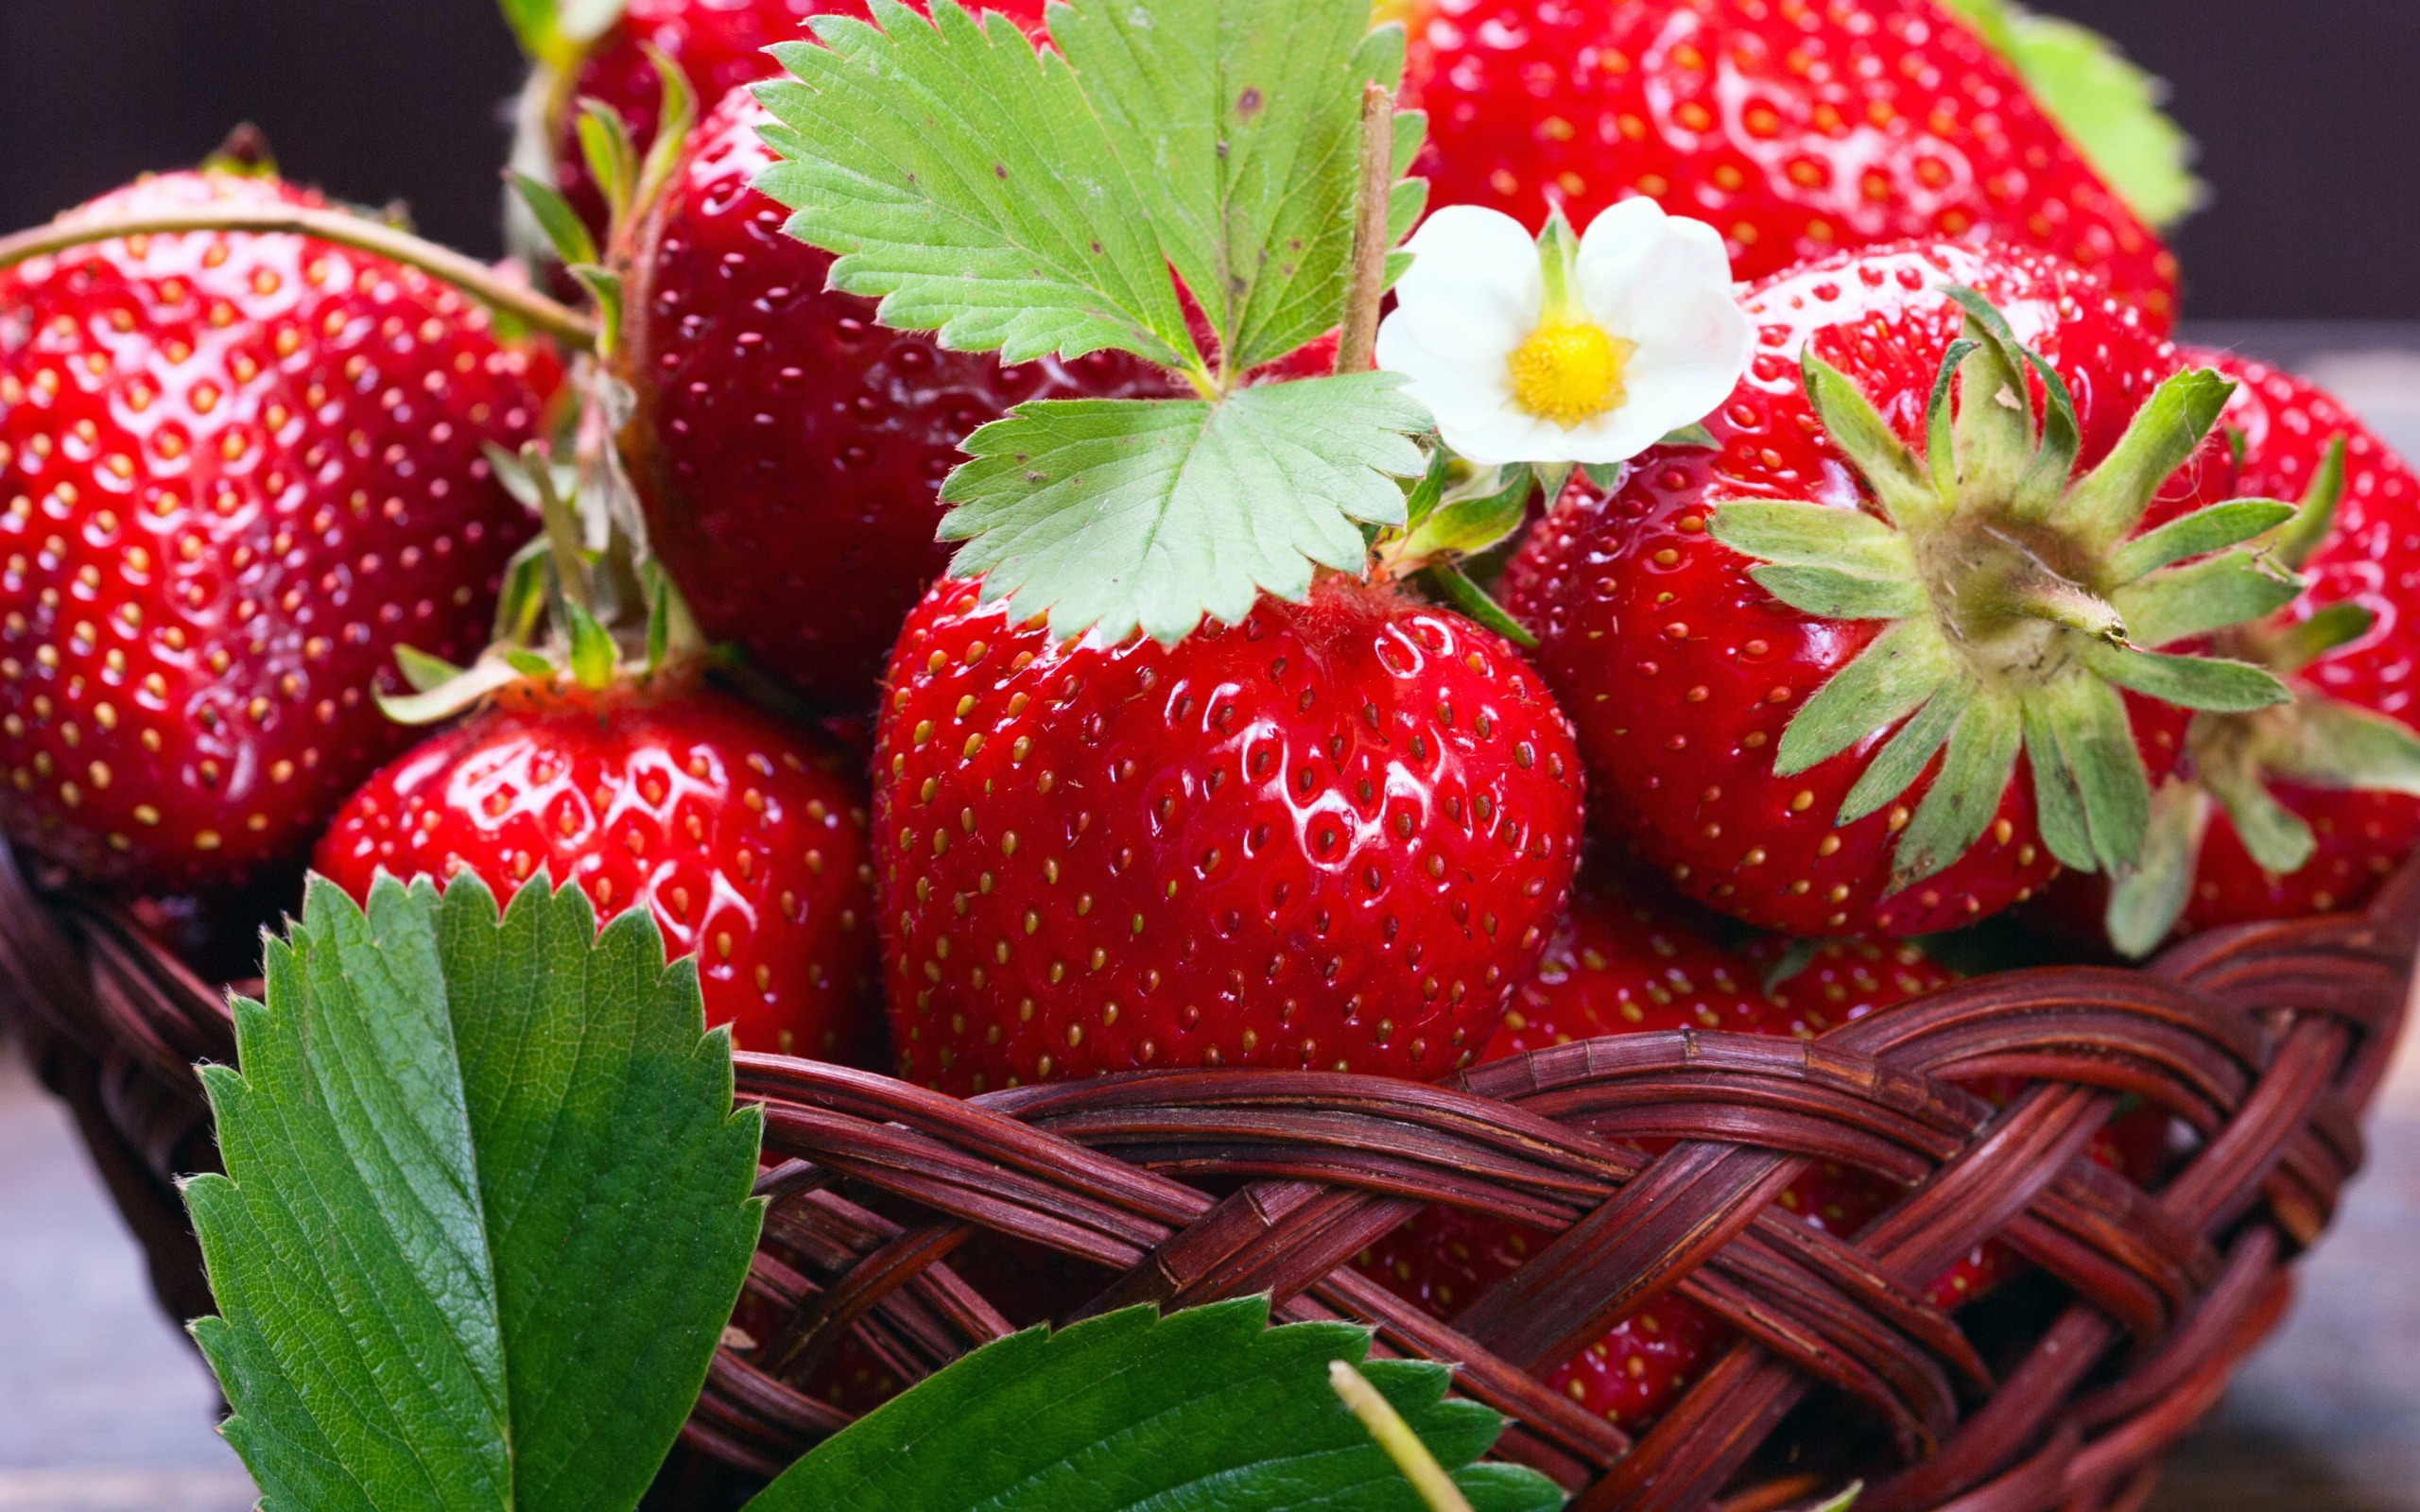 strawberry-fresh-berries-1131.jpg